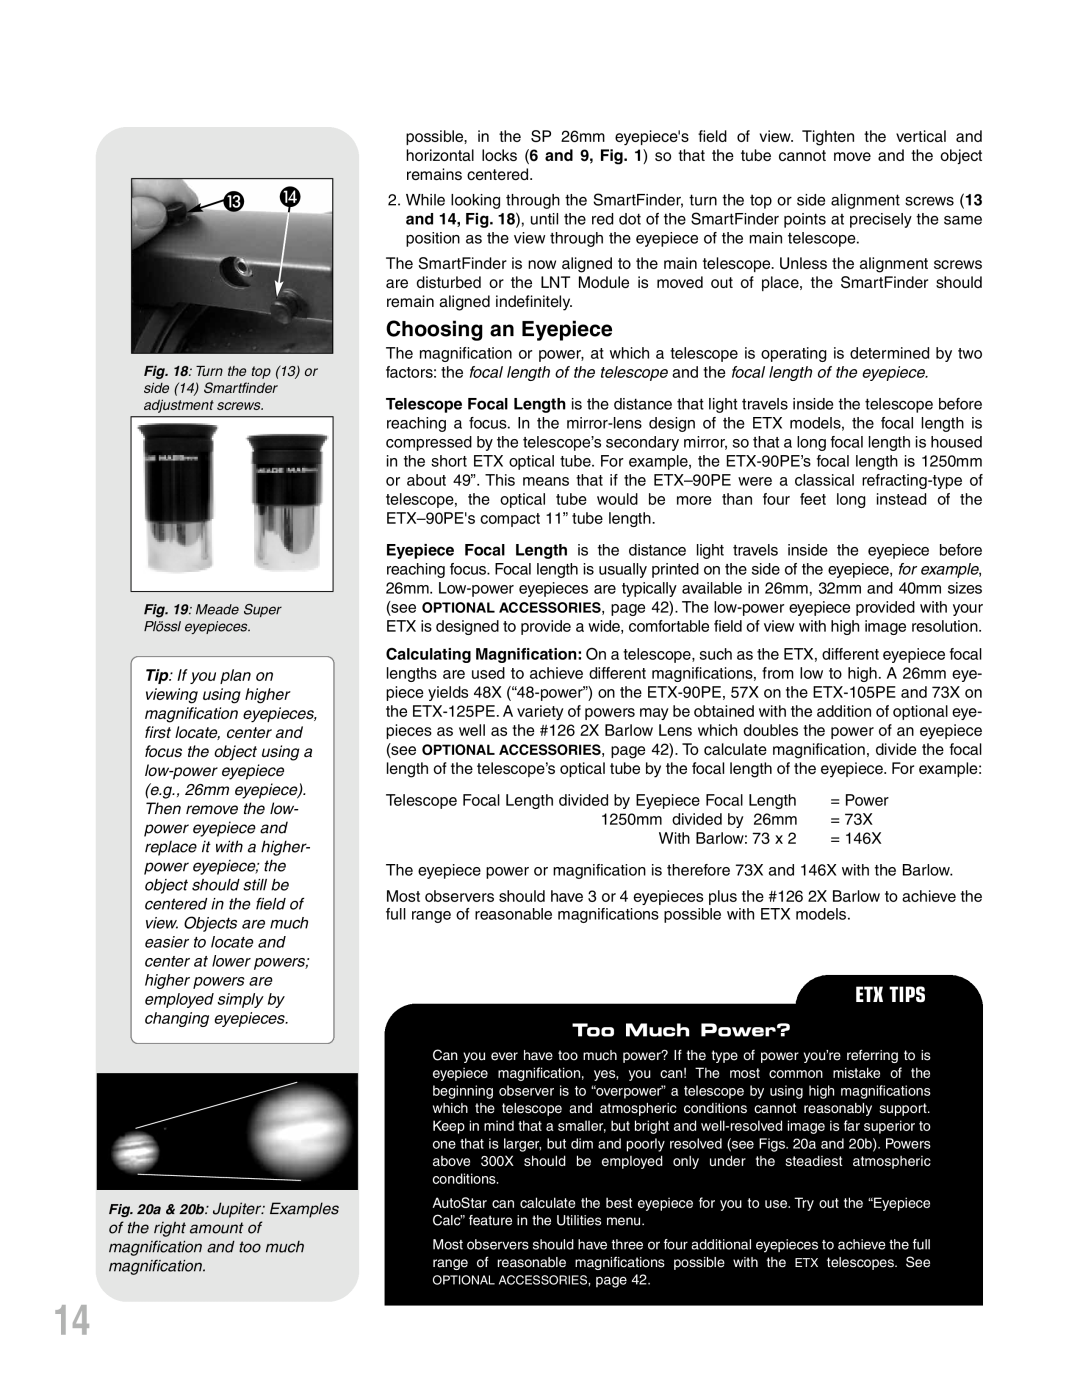 Meade ETX-90PE instruction manual Choosing an Eyepiece, Etx Tips, Too Much Power? 